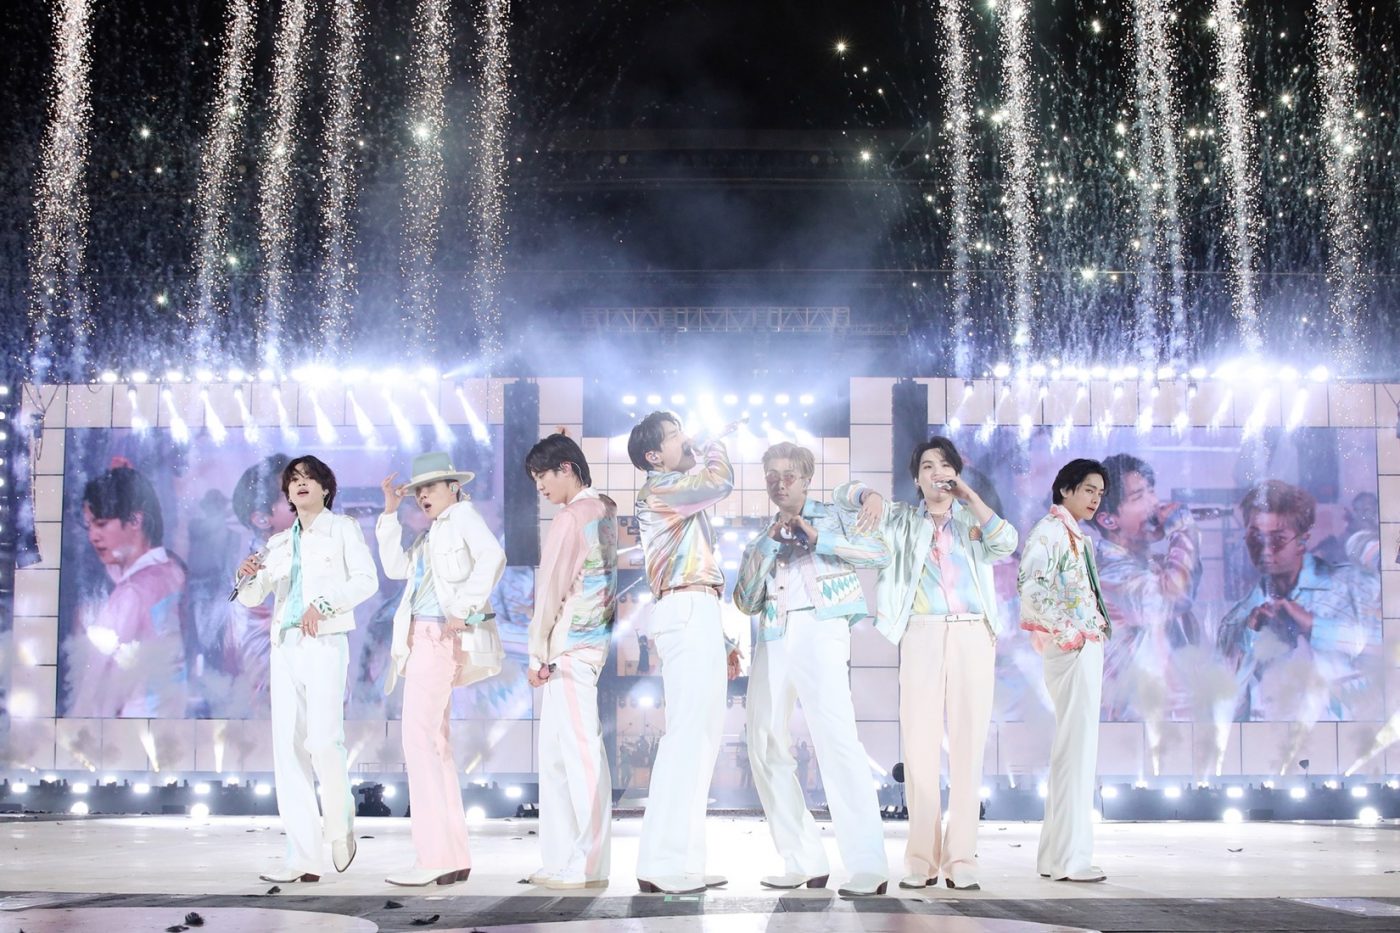 BTSの2年半ぶりのソウル対面コンサートに、全世界246万5,000人が熱狂